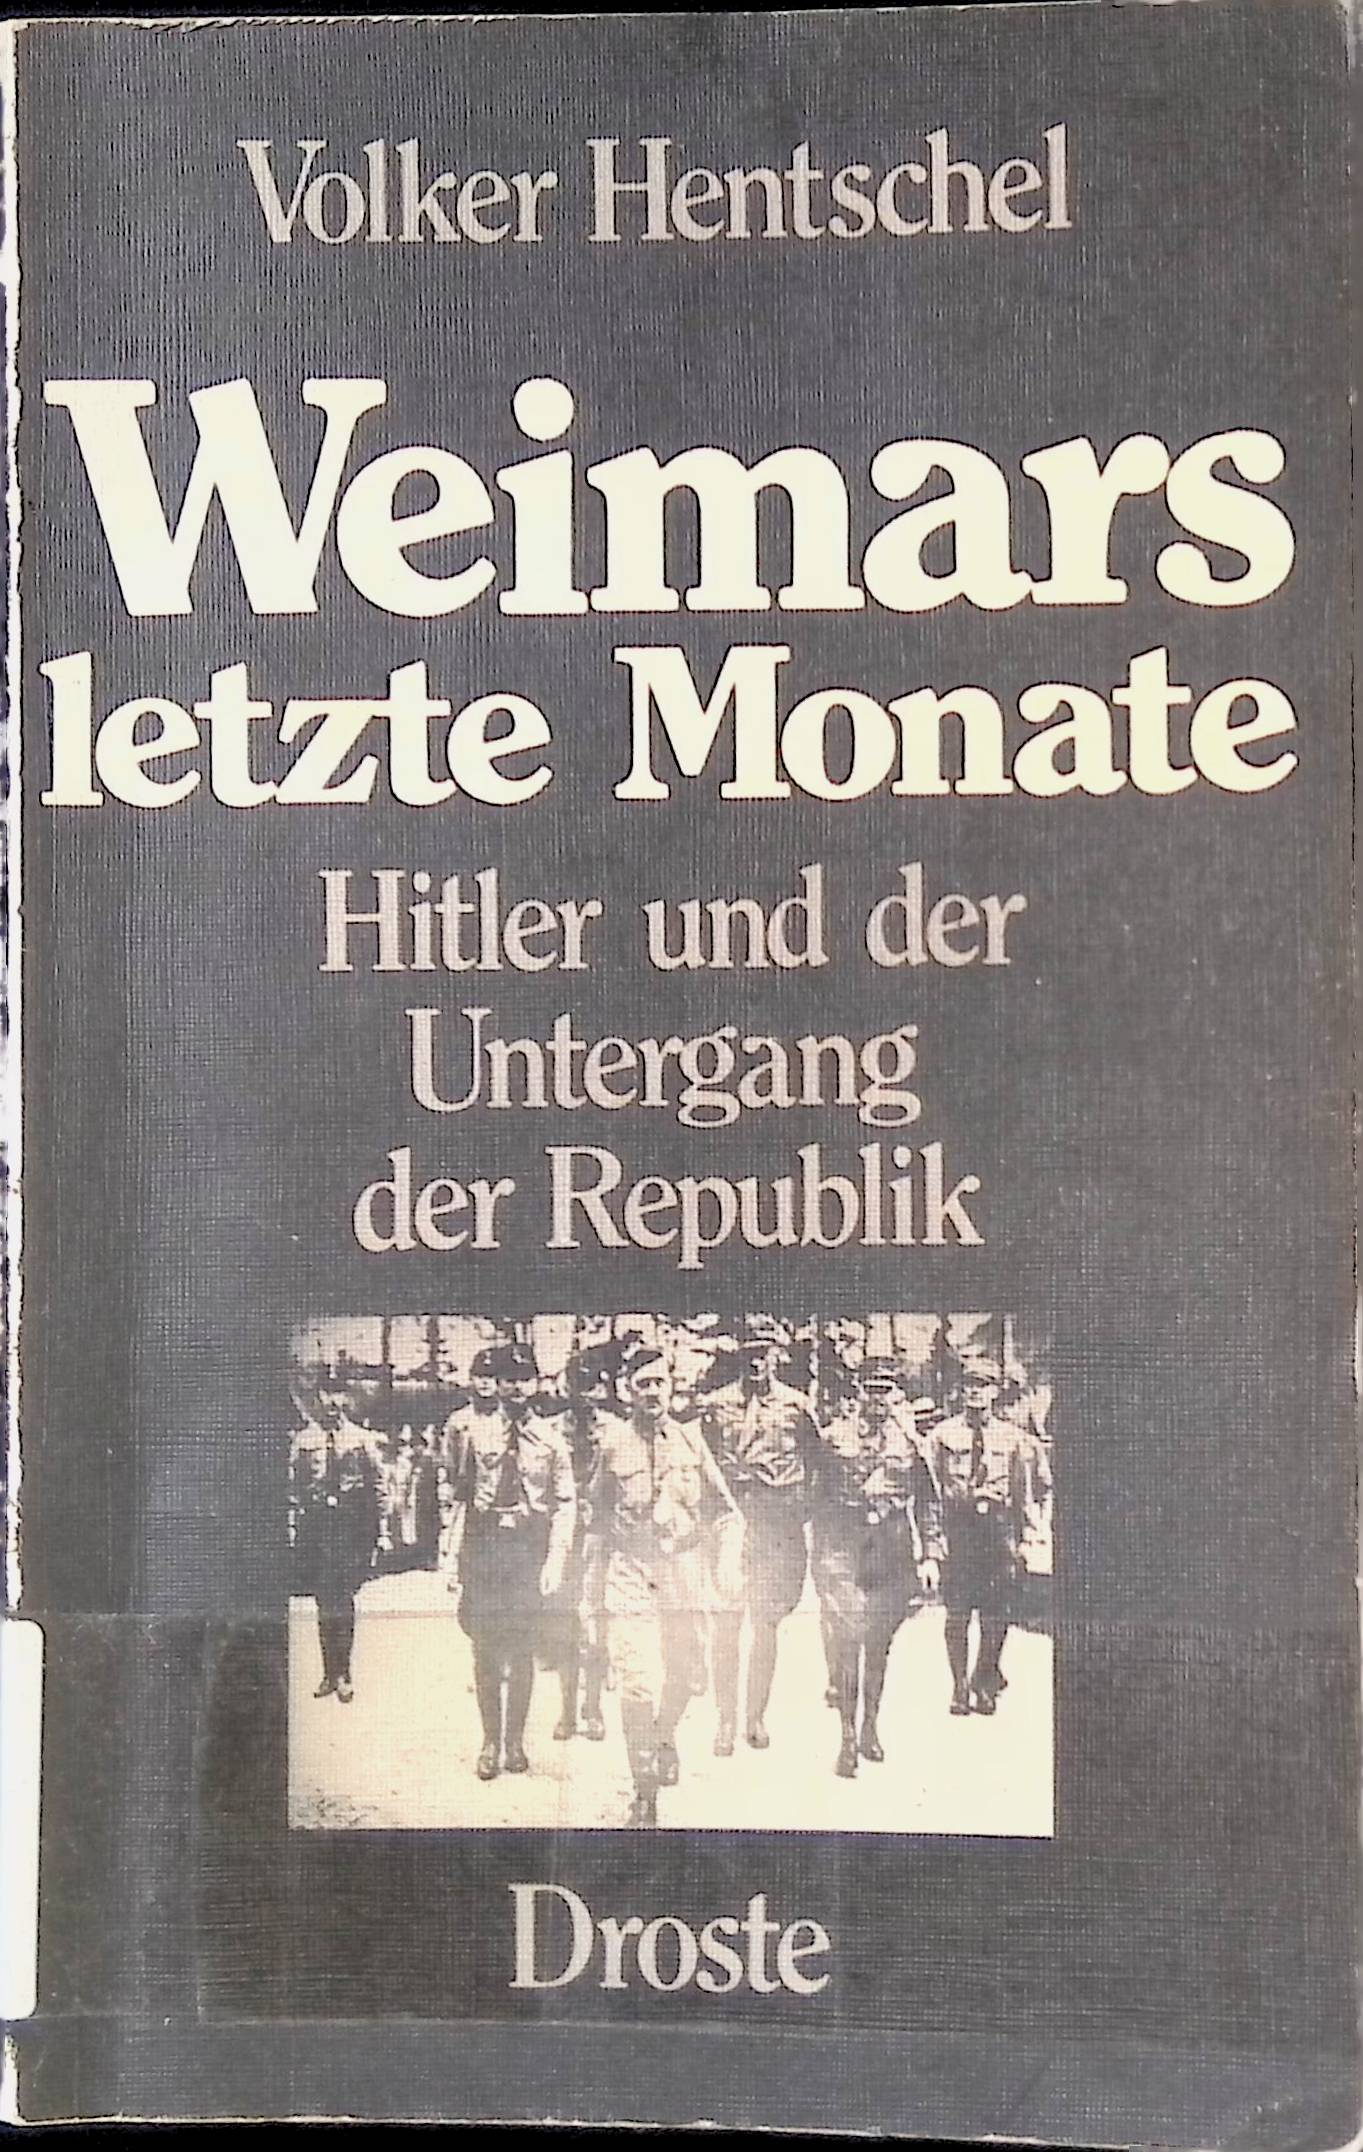 Weimars letzte Monate : Hitler u.d. Untergang d. Republik. - Hentschel, Volker